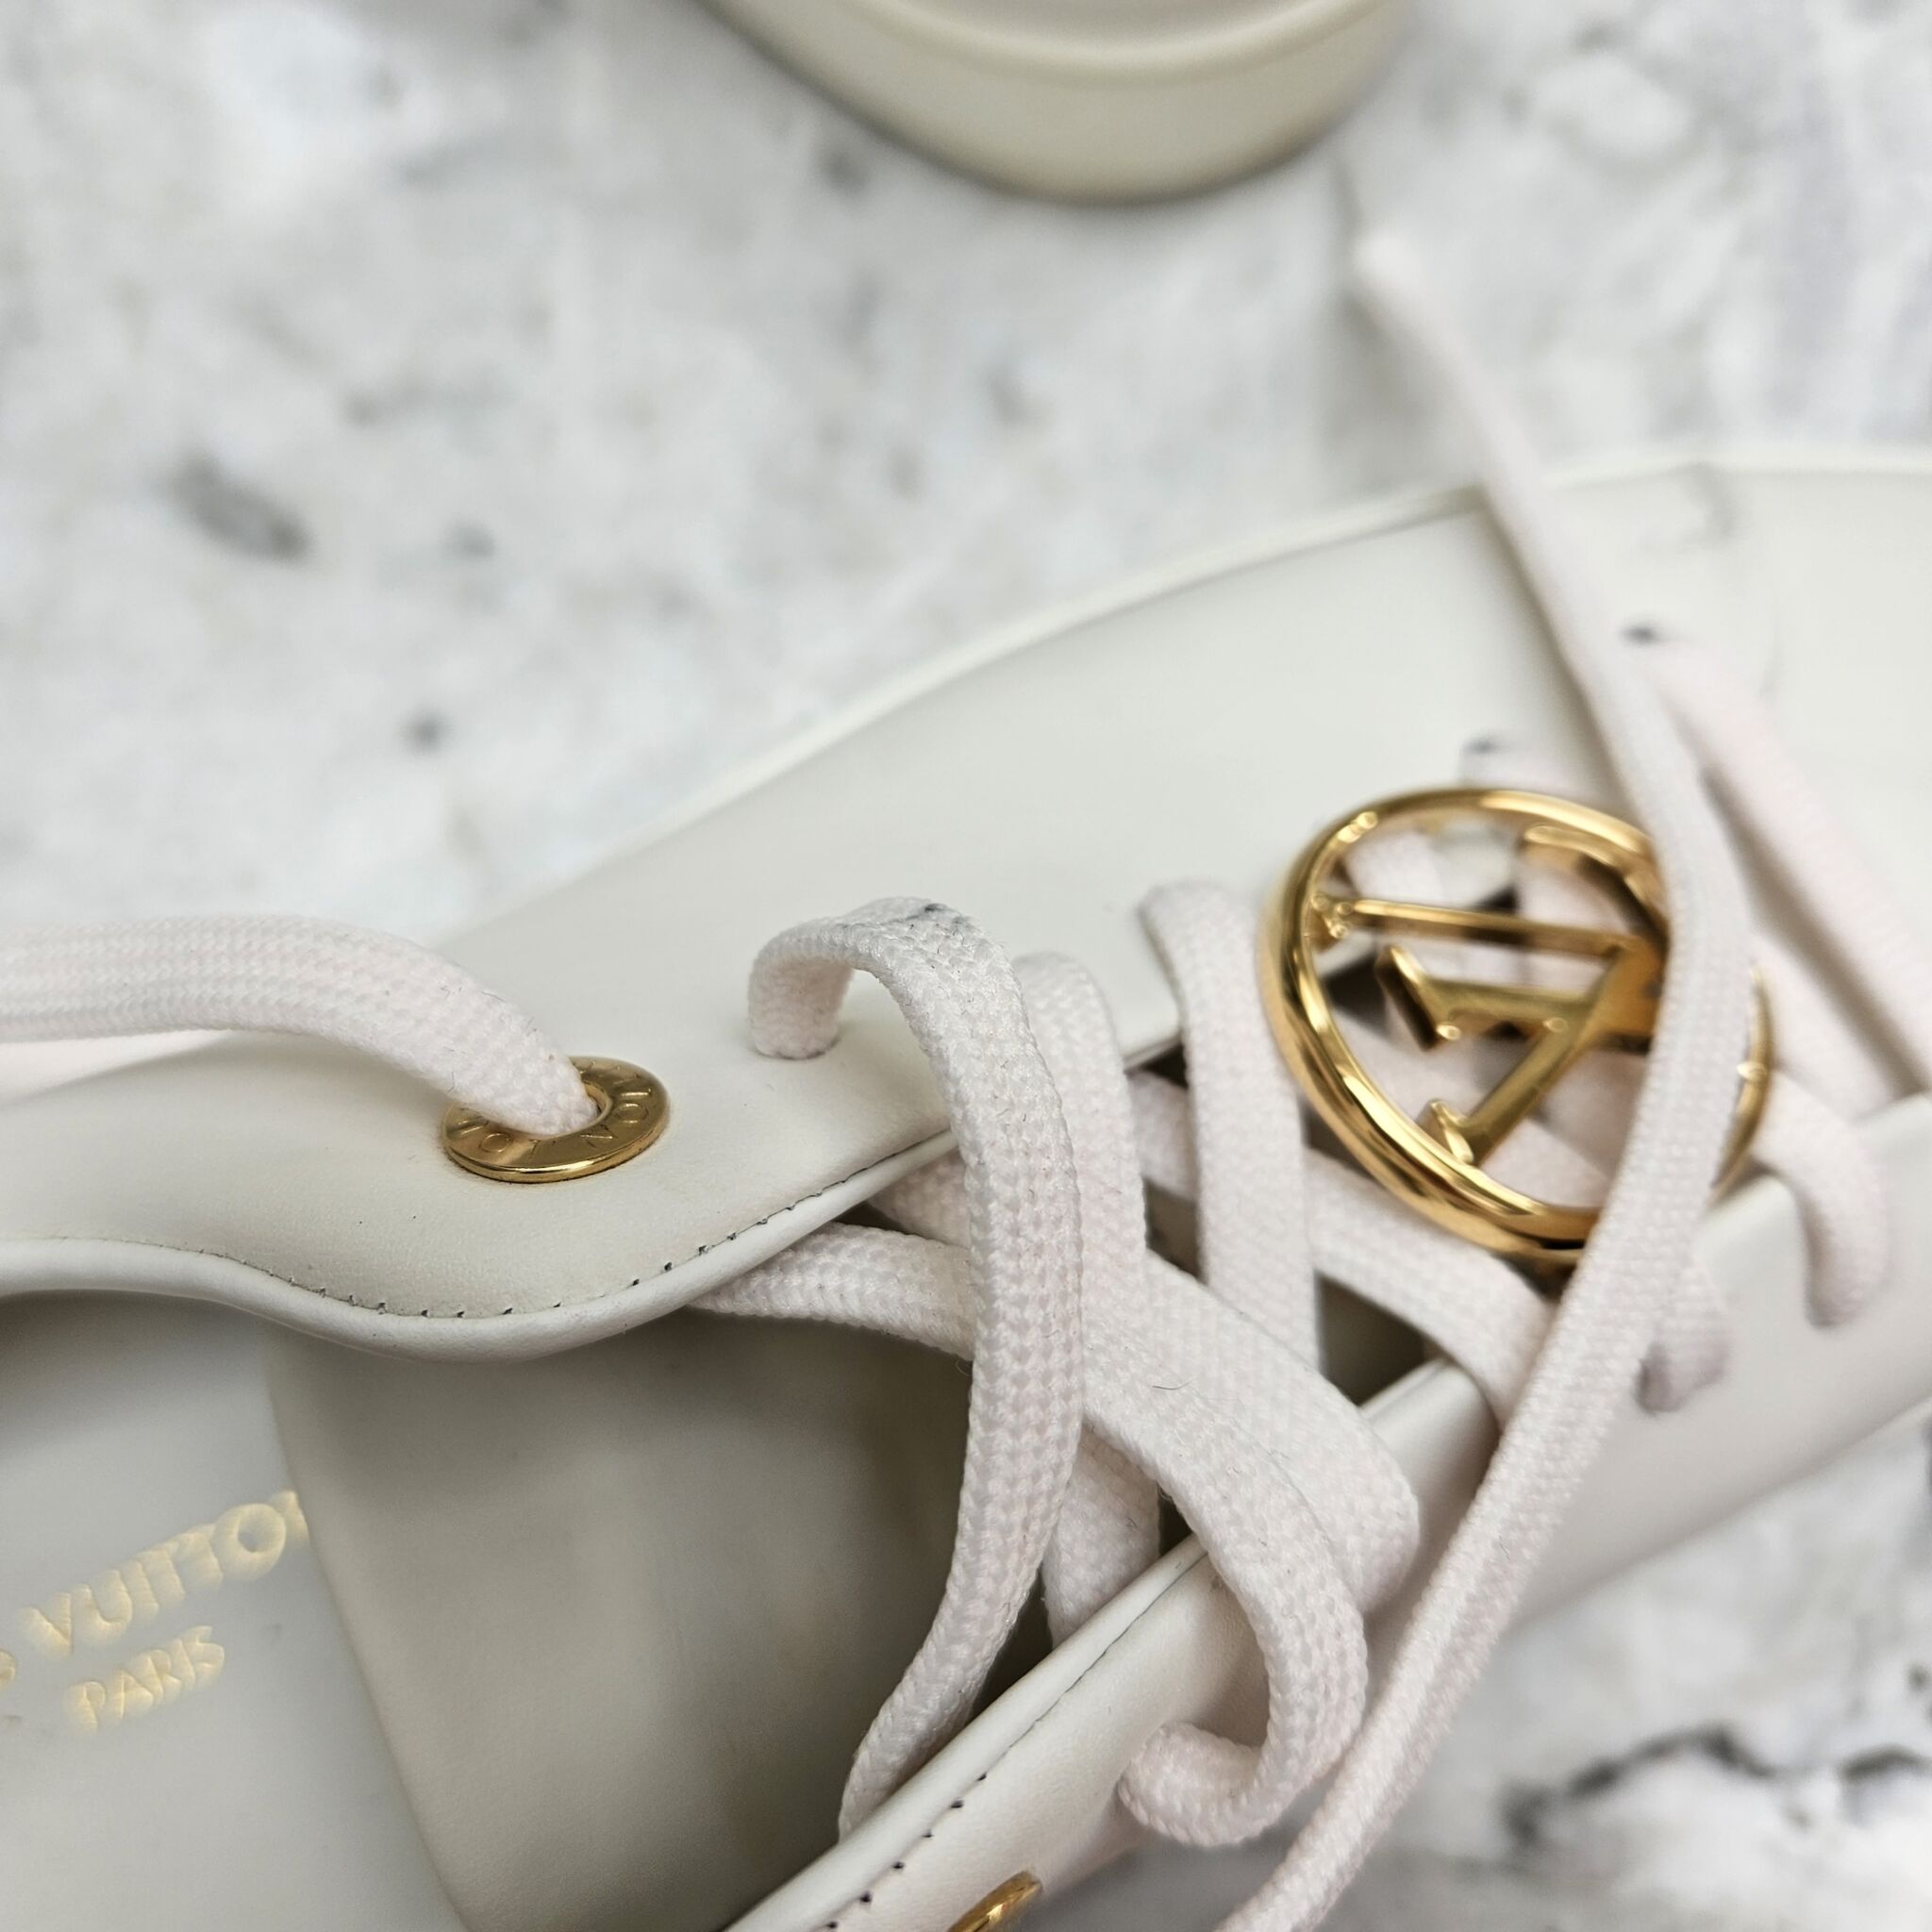 Louis Vuitton FRONTROW Sneaker White. Size 38.0